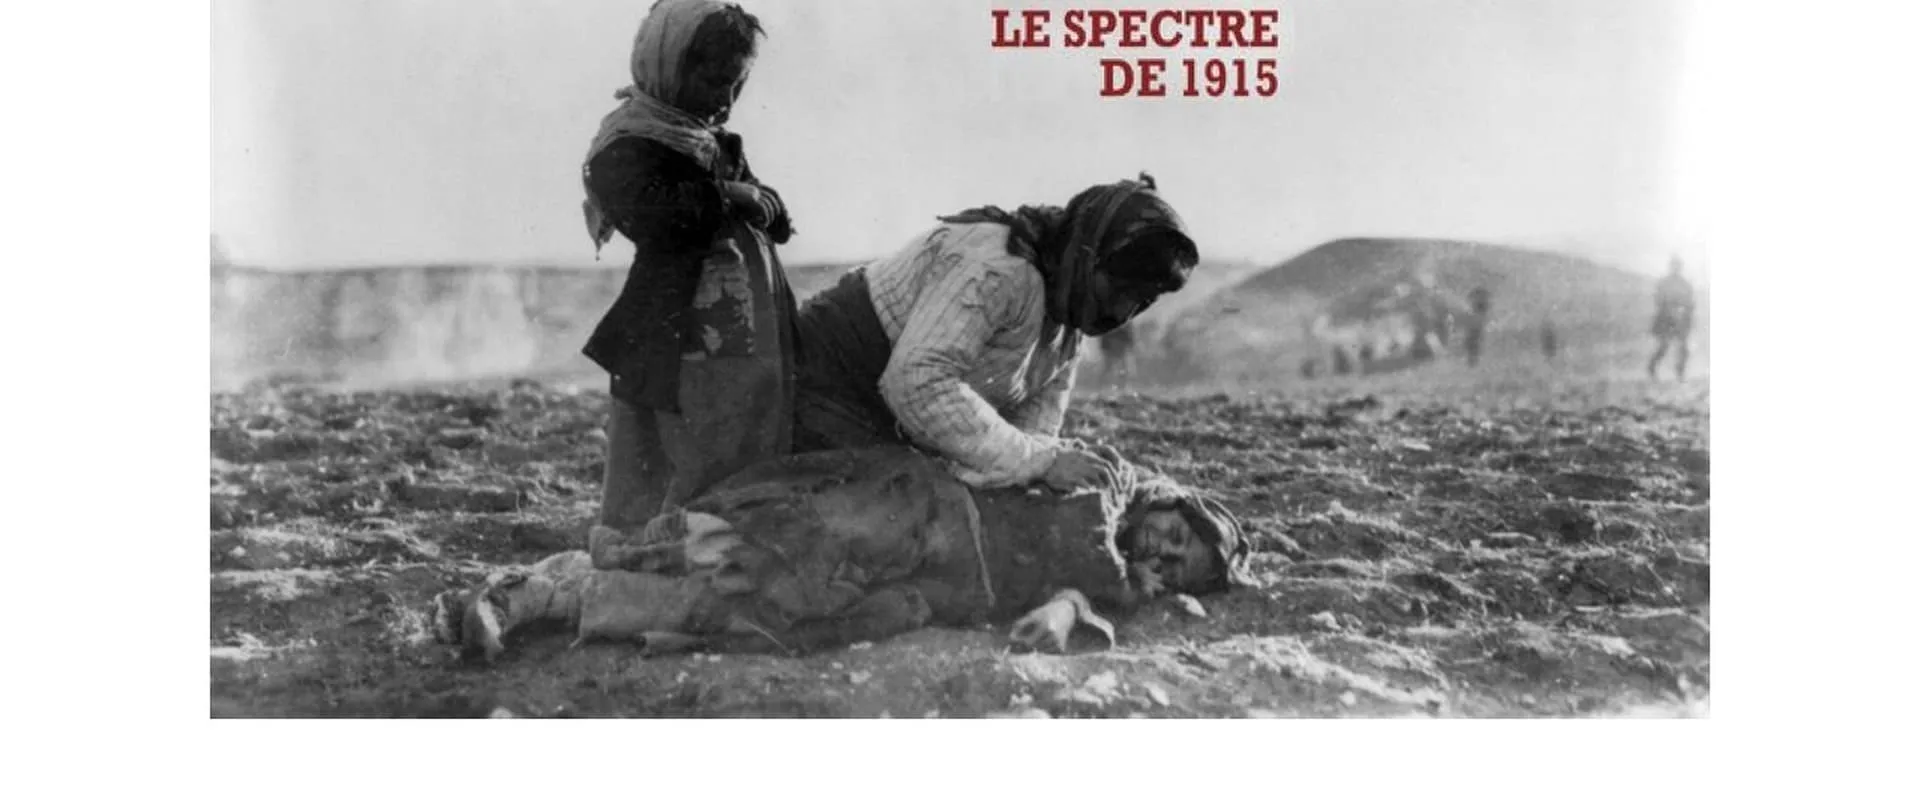 Génocide arménien, le spectre de 1915 (2017)